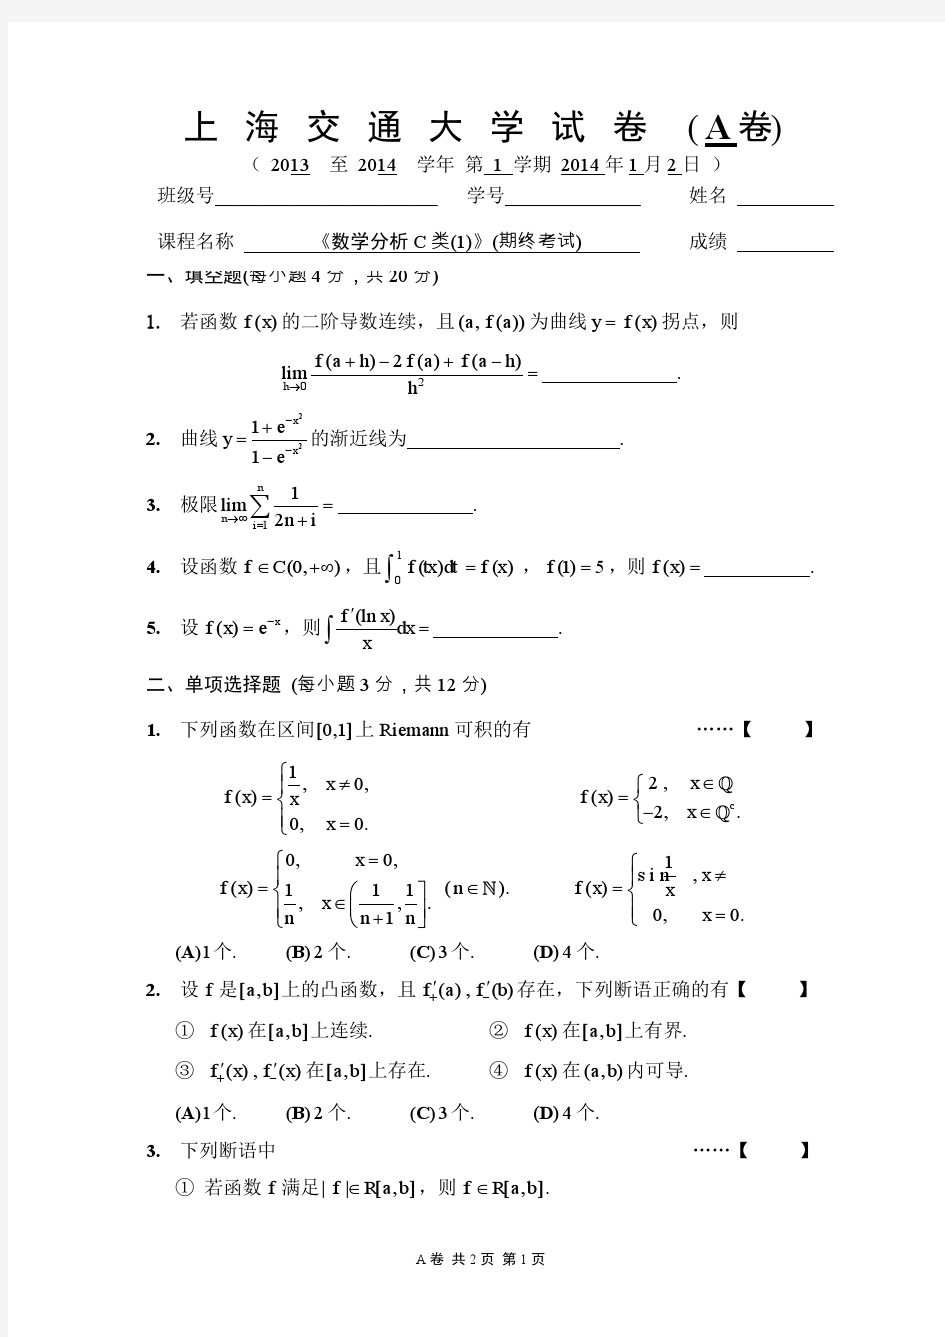 上海交大2013级数学分析第1学期期终试卷